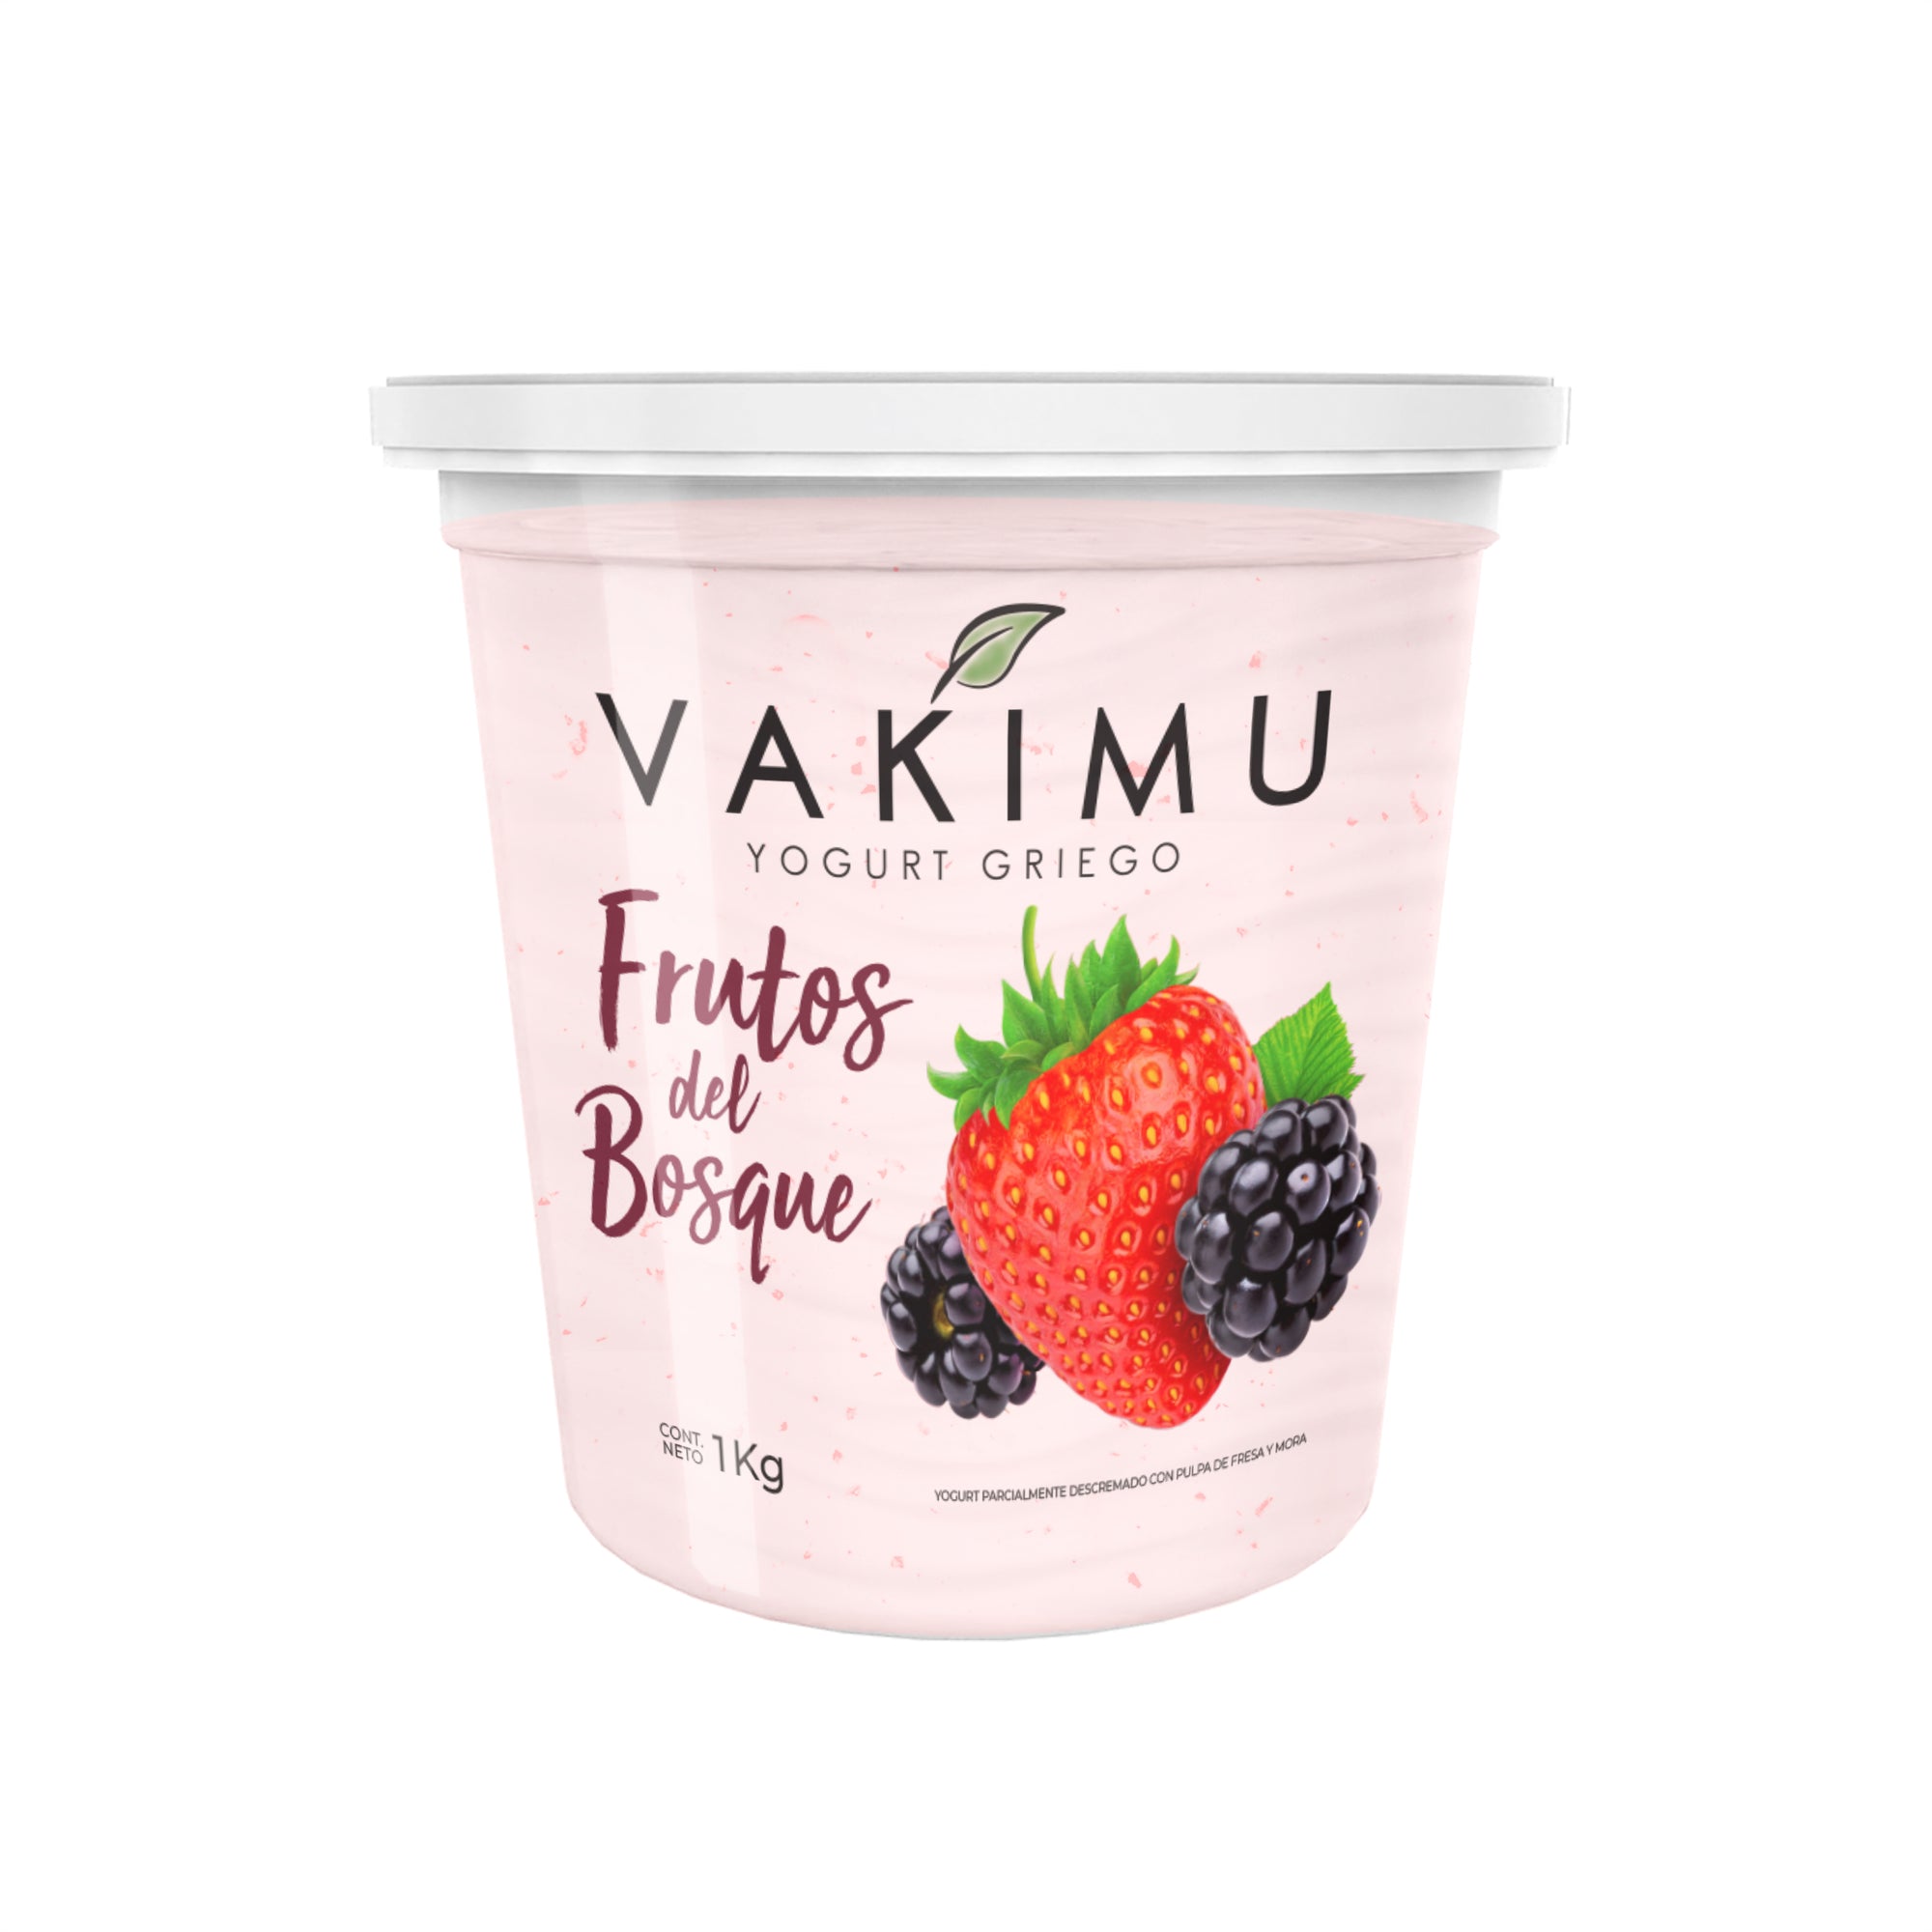 Yogurt Griego Vakimu Frutos del Bosque 1Kg